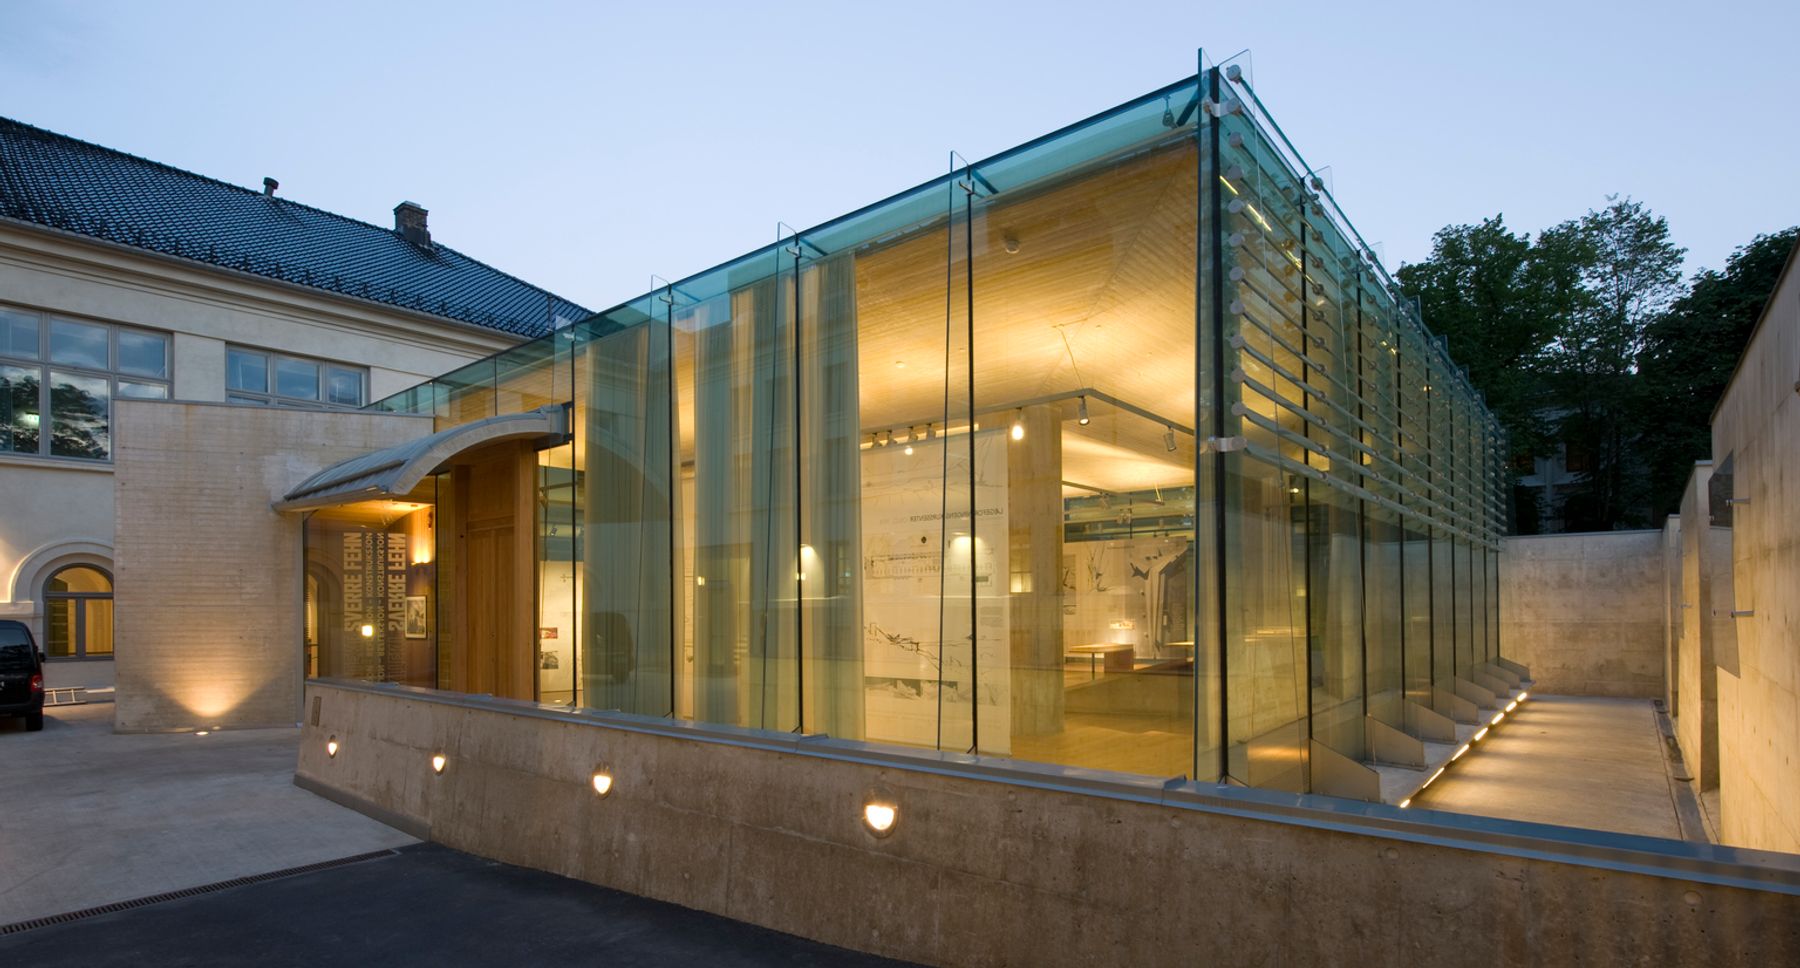 Nasjonalmuseet for kunst, arkitektur og design (Museum of Architecture), Oslo. Architect: Prof. Arch. Sverre Fehn, Oslo.